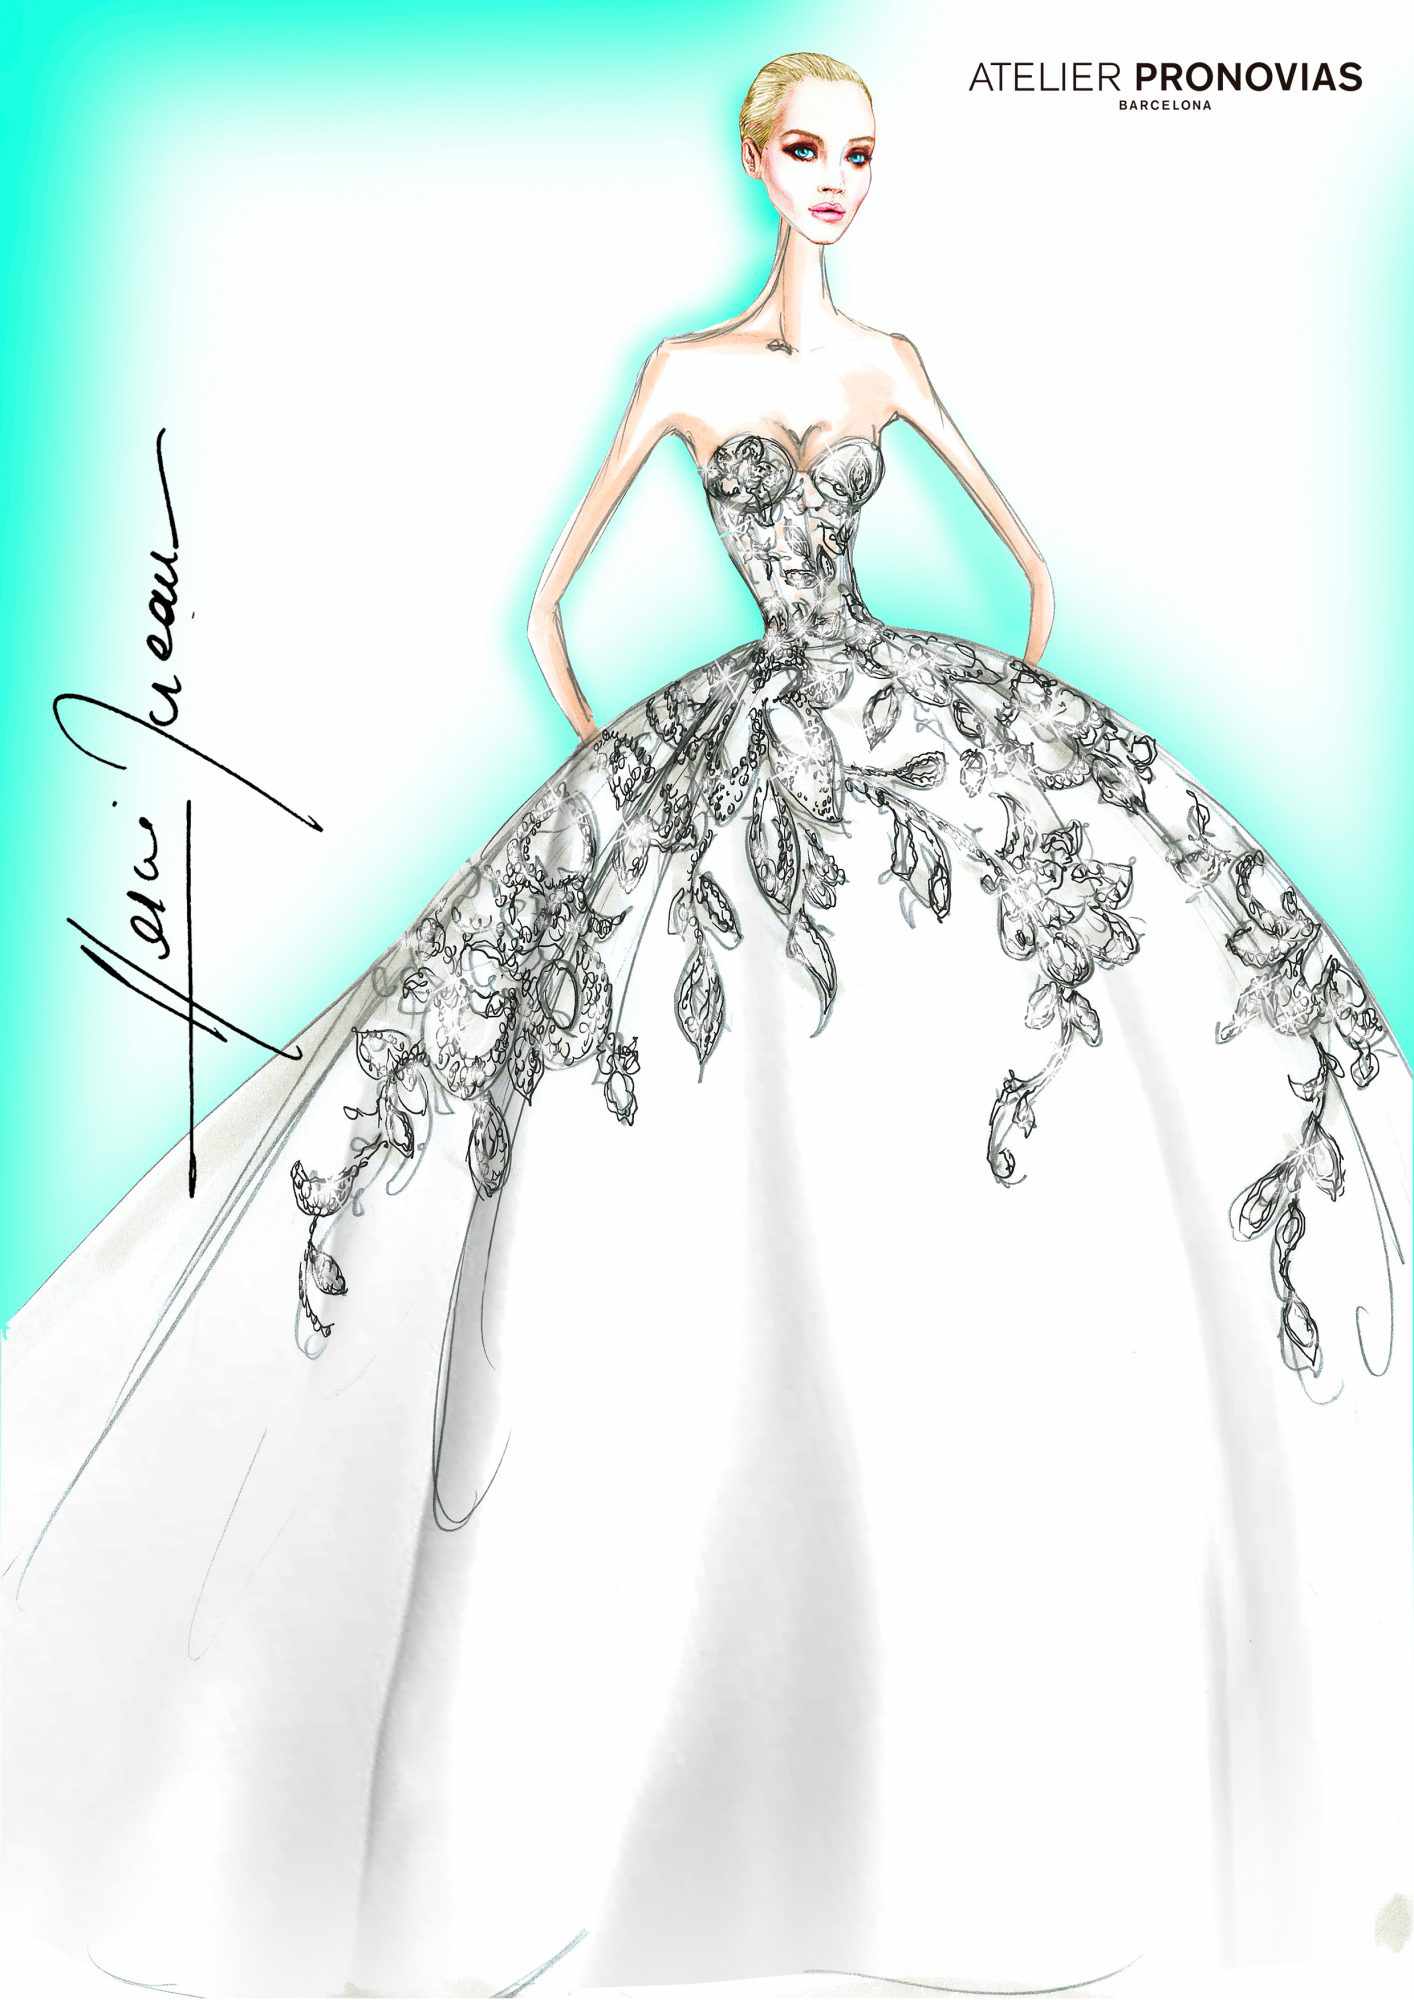 pronovias wedding dress sketch